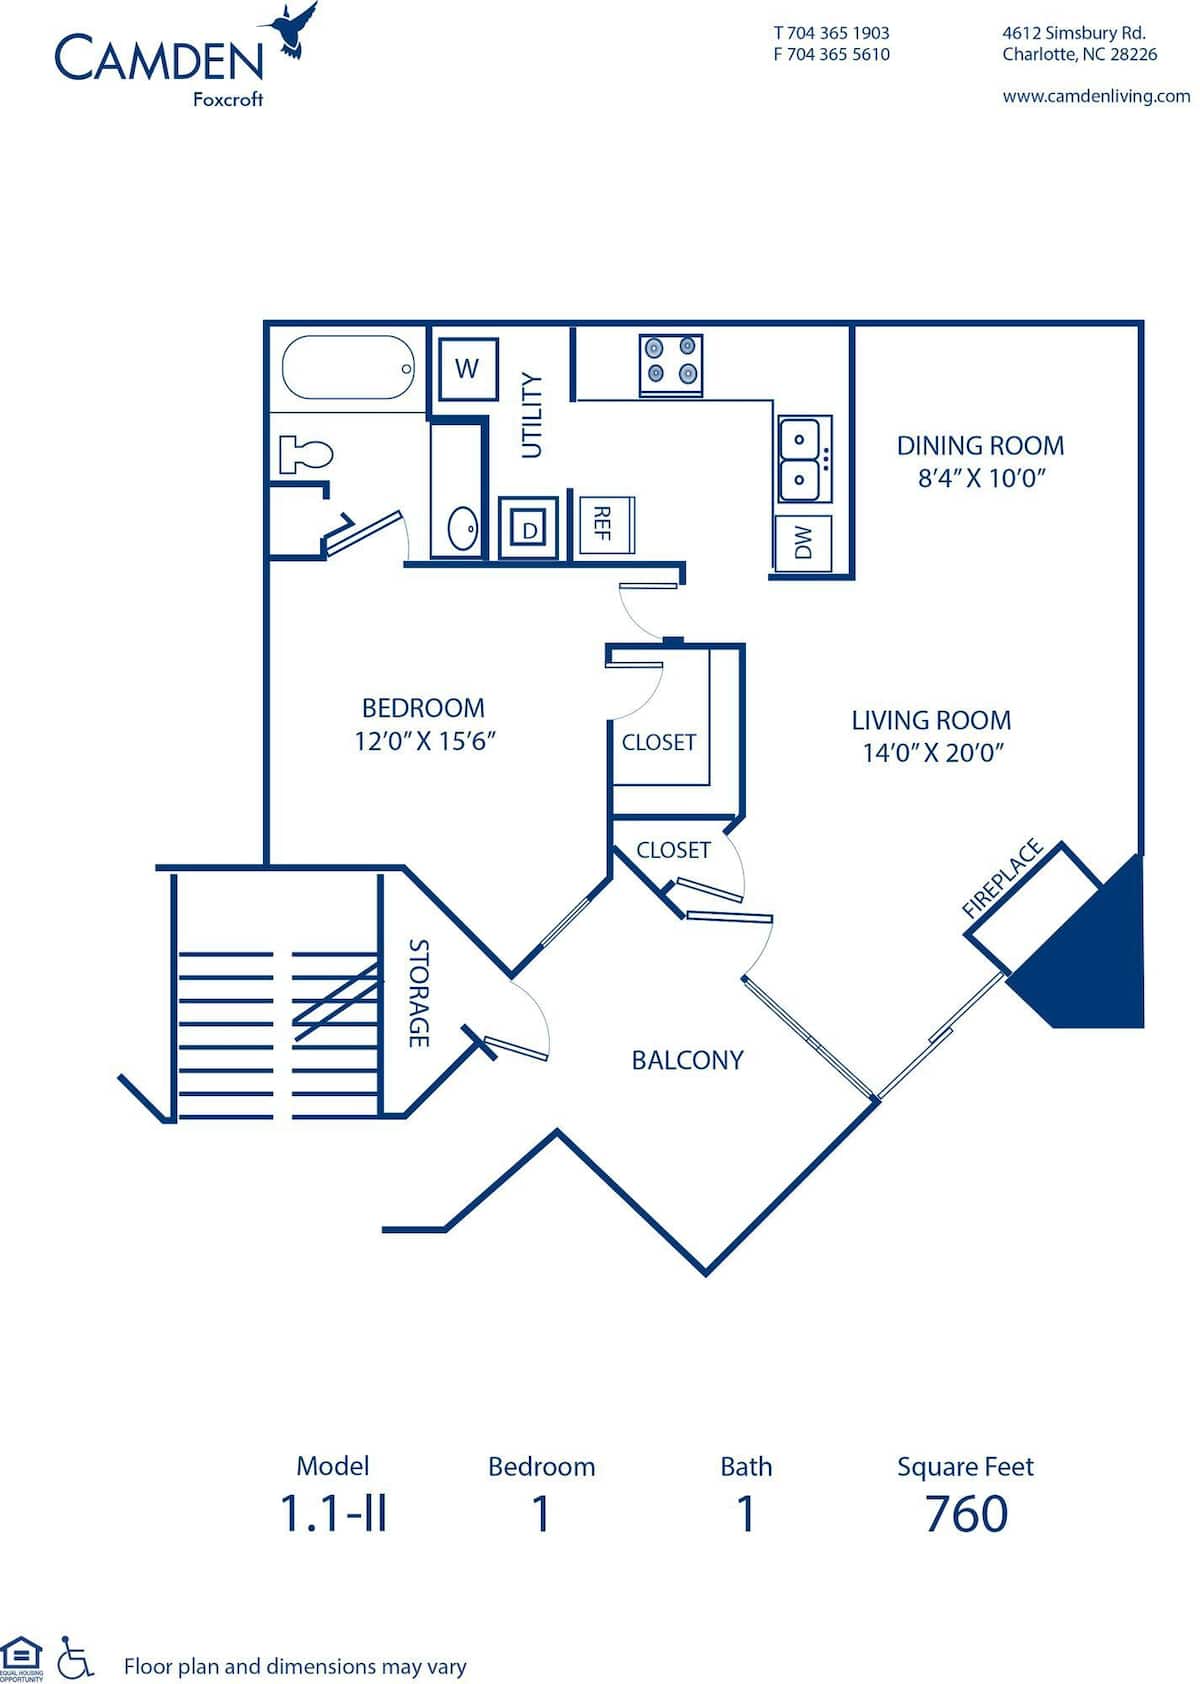 Floorplan diagram for 1.1 - II, showing 1 bedroom